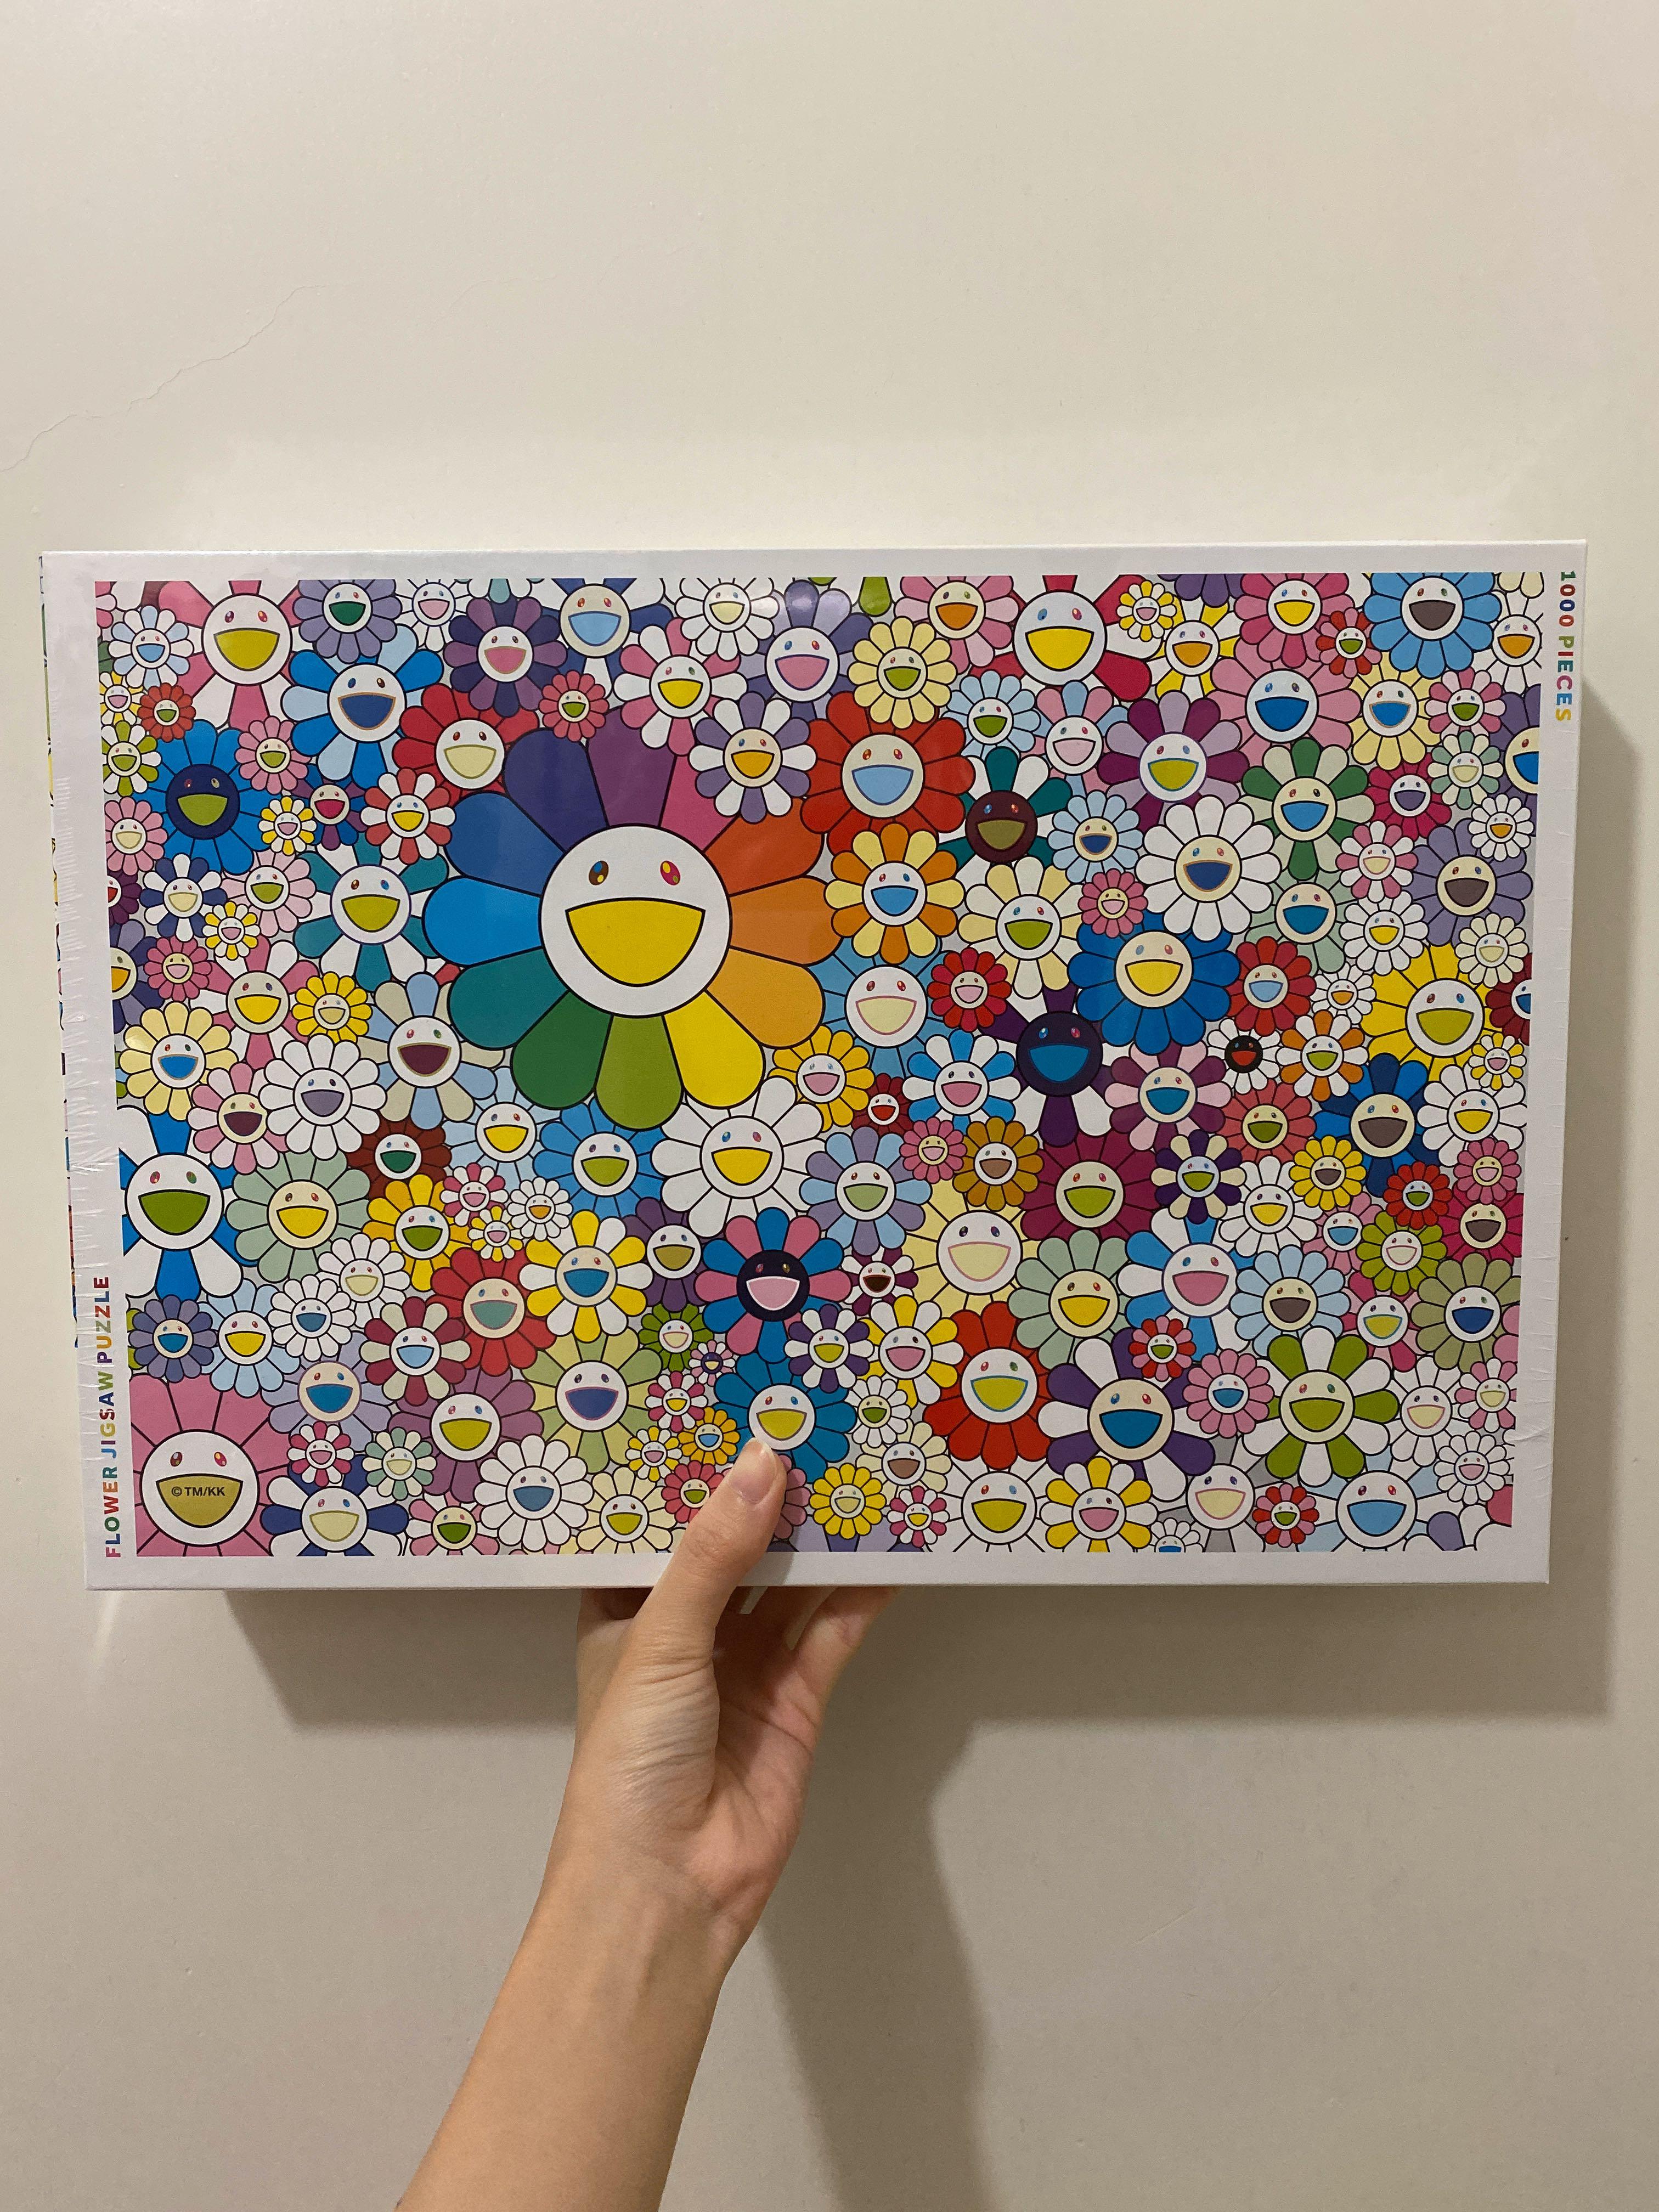 村上隆 Jigsaw Puzzle Murakami Flowers パズルドラえもん